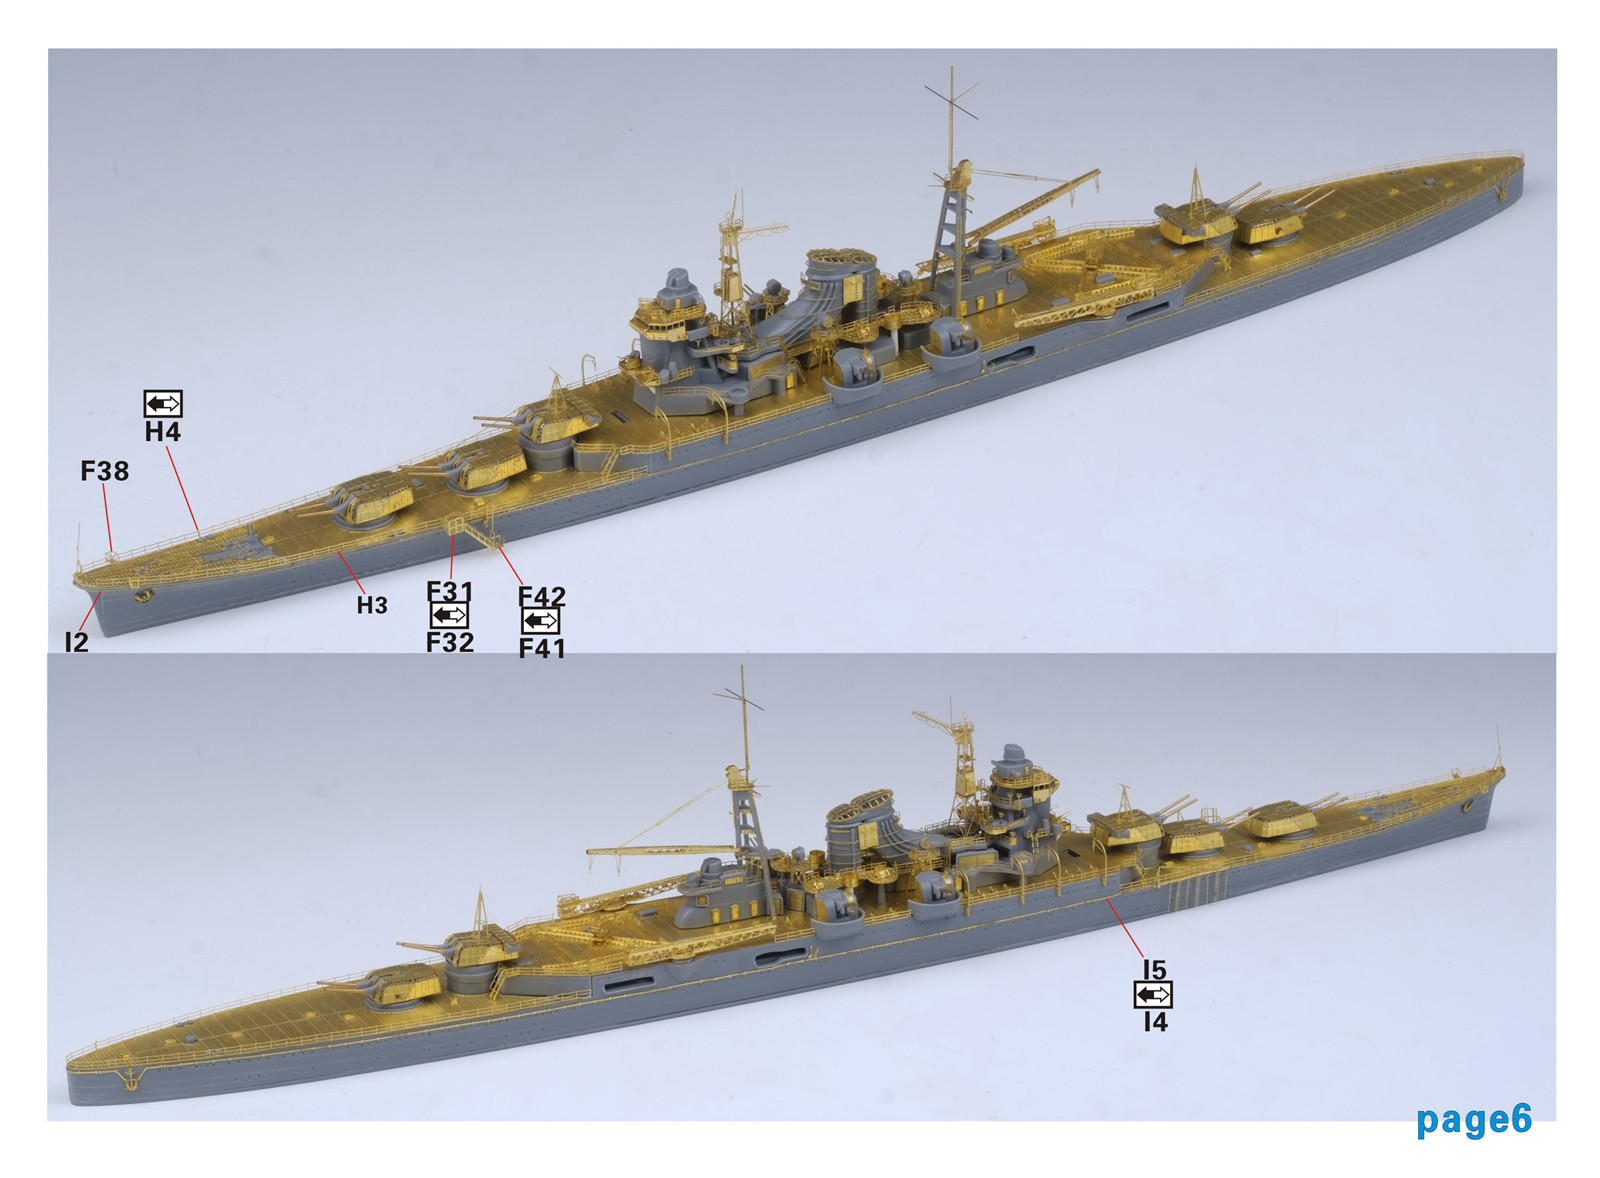 1/700 二战日本海军三隈号重巡洋舰升级改造套件(配田宫31342)